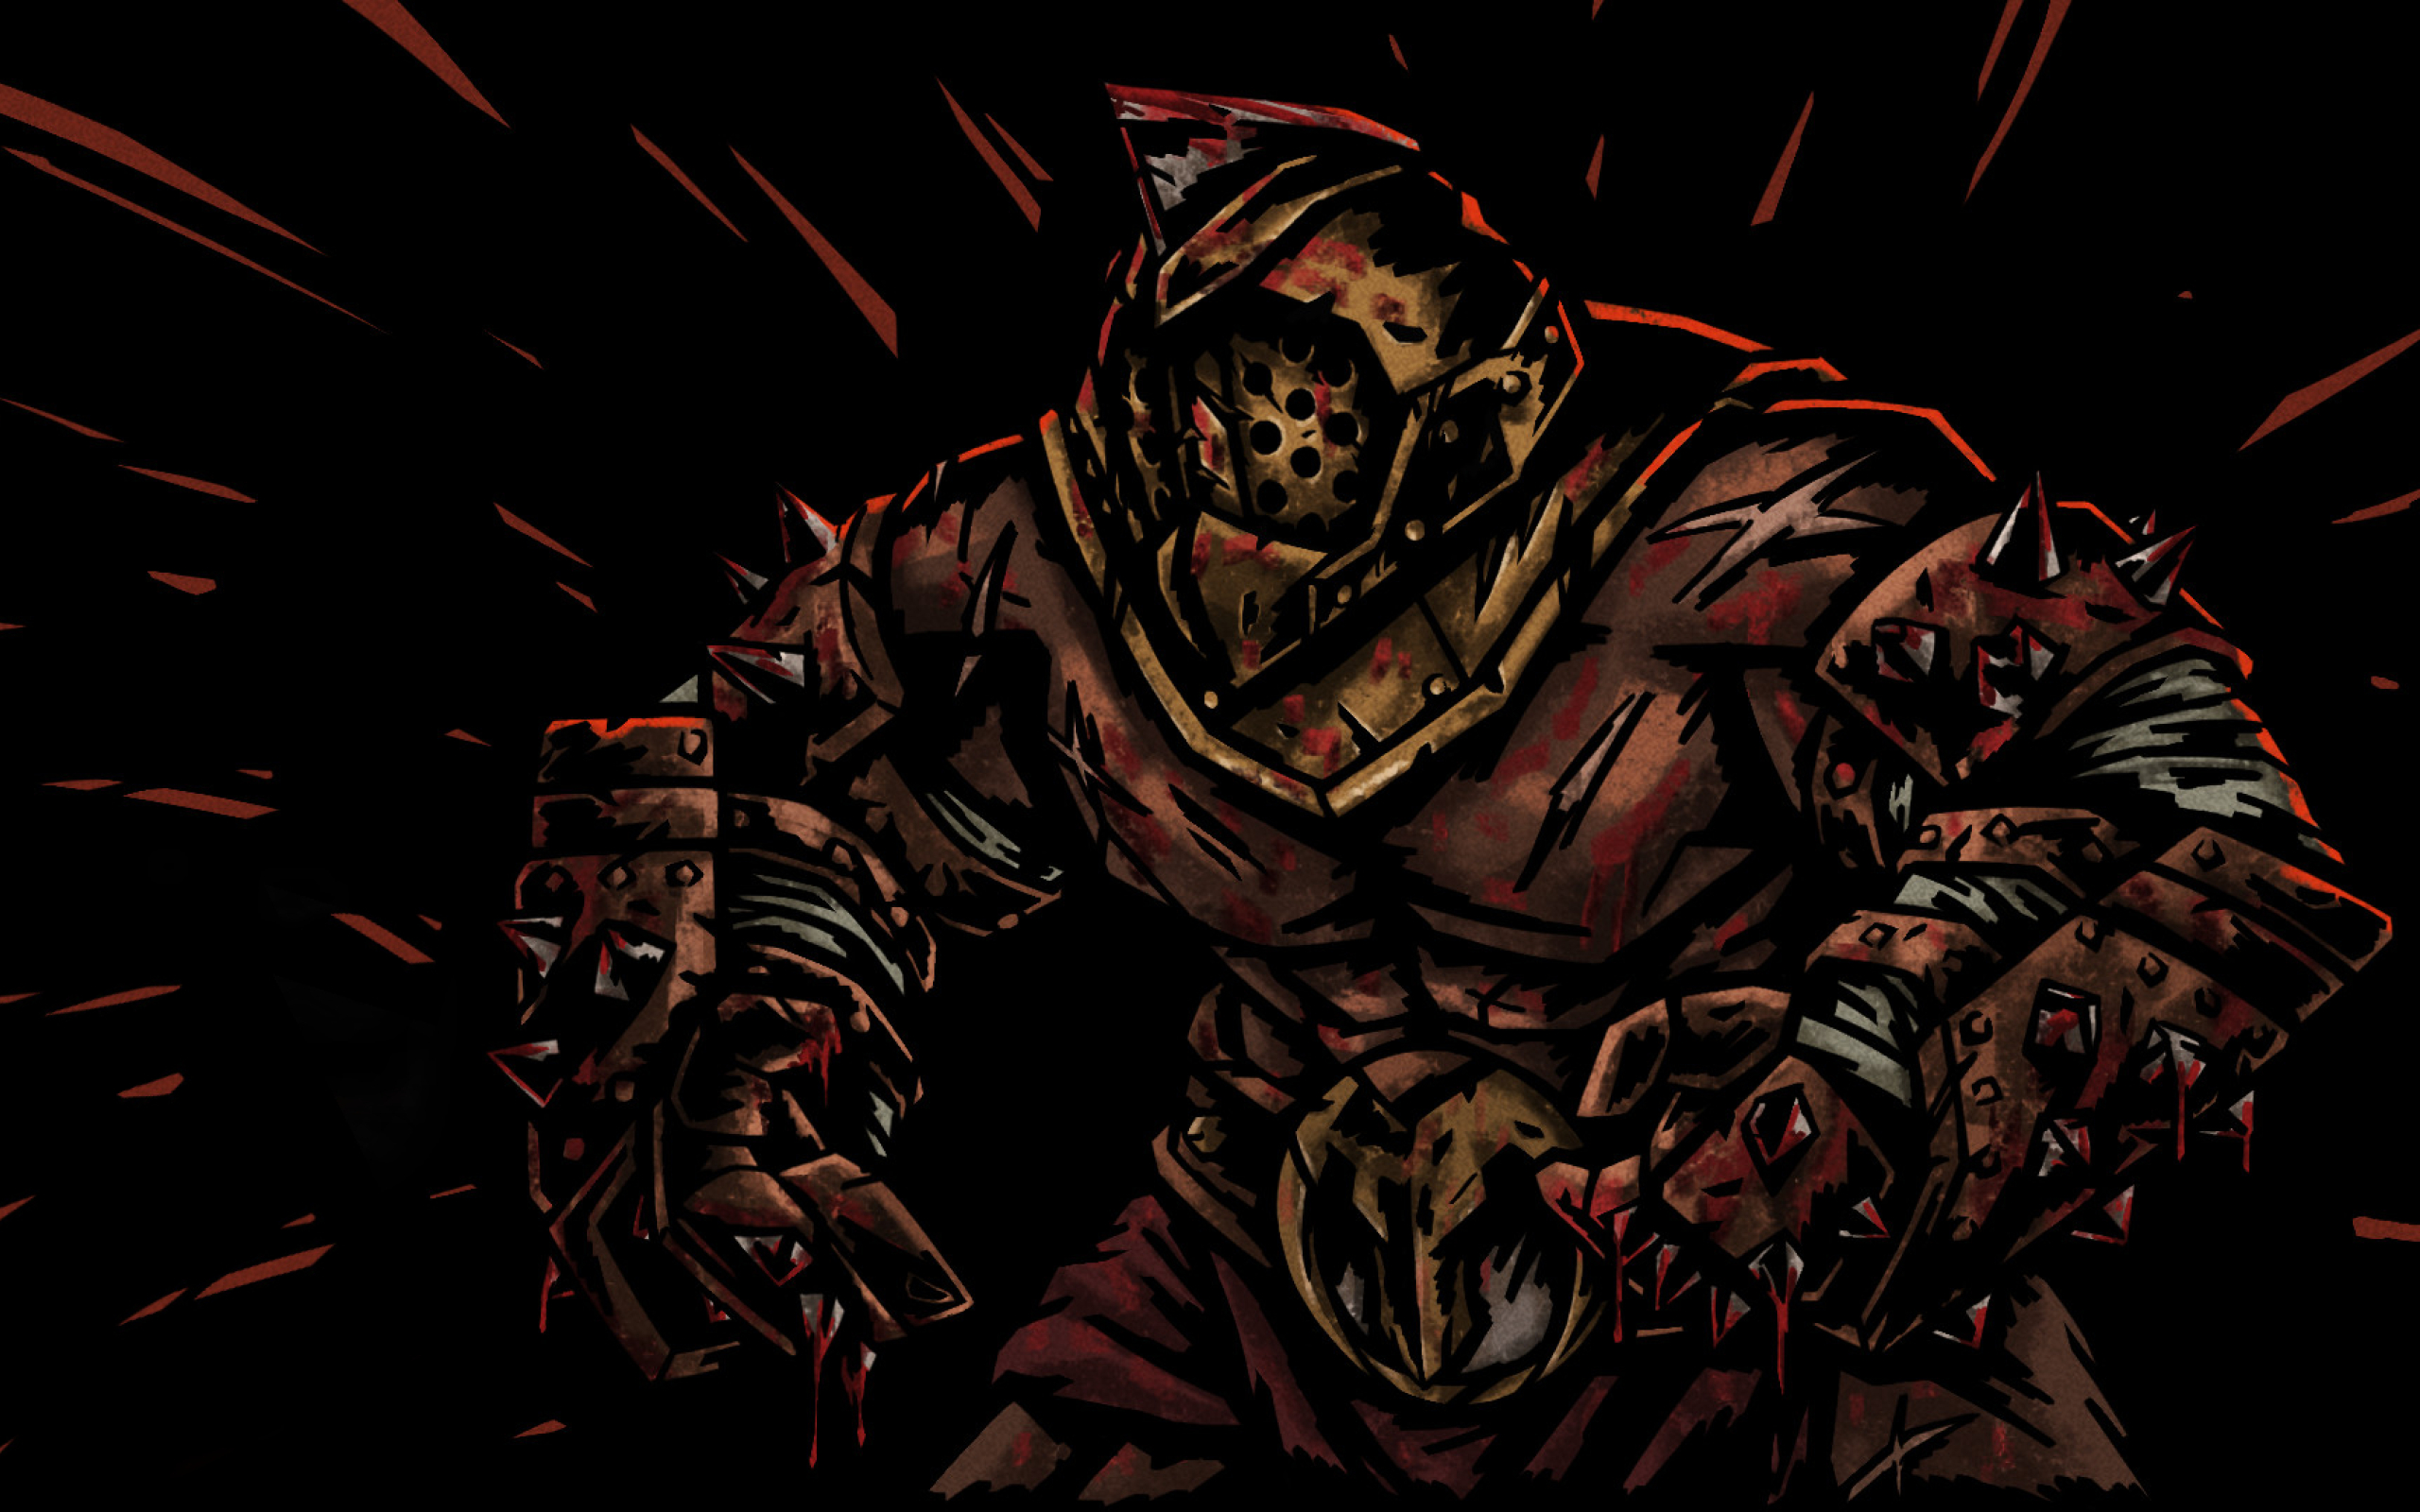 dark dungeon background